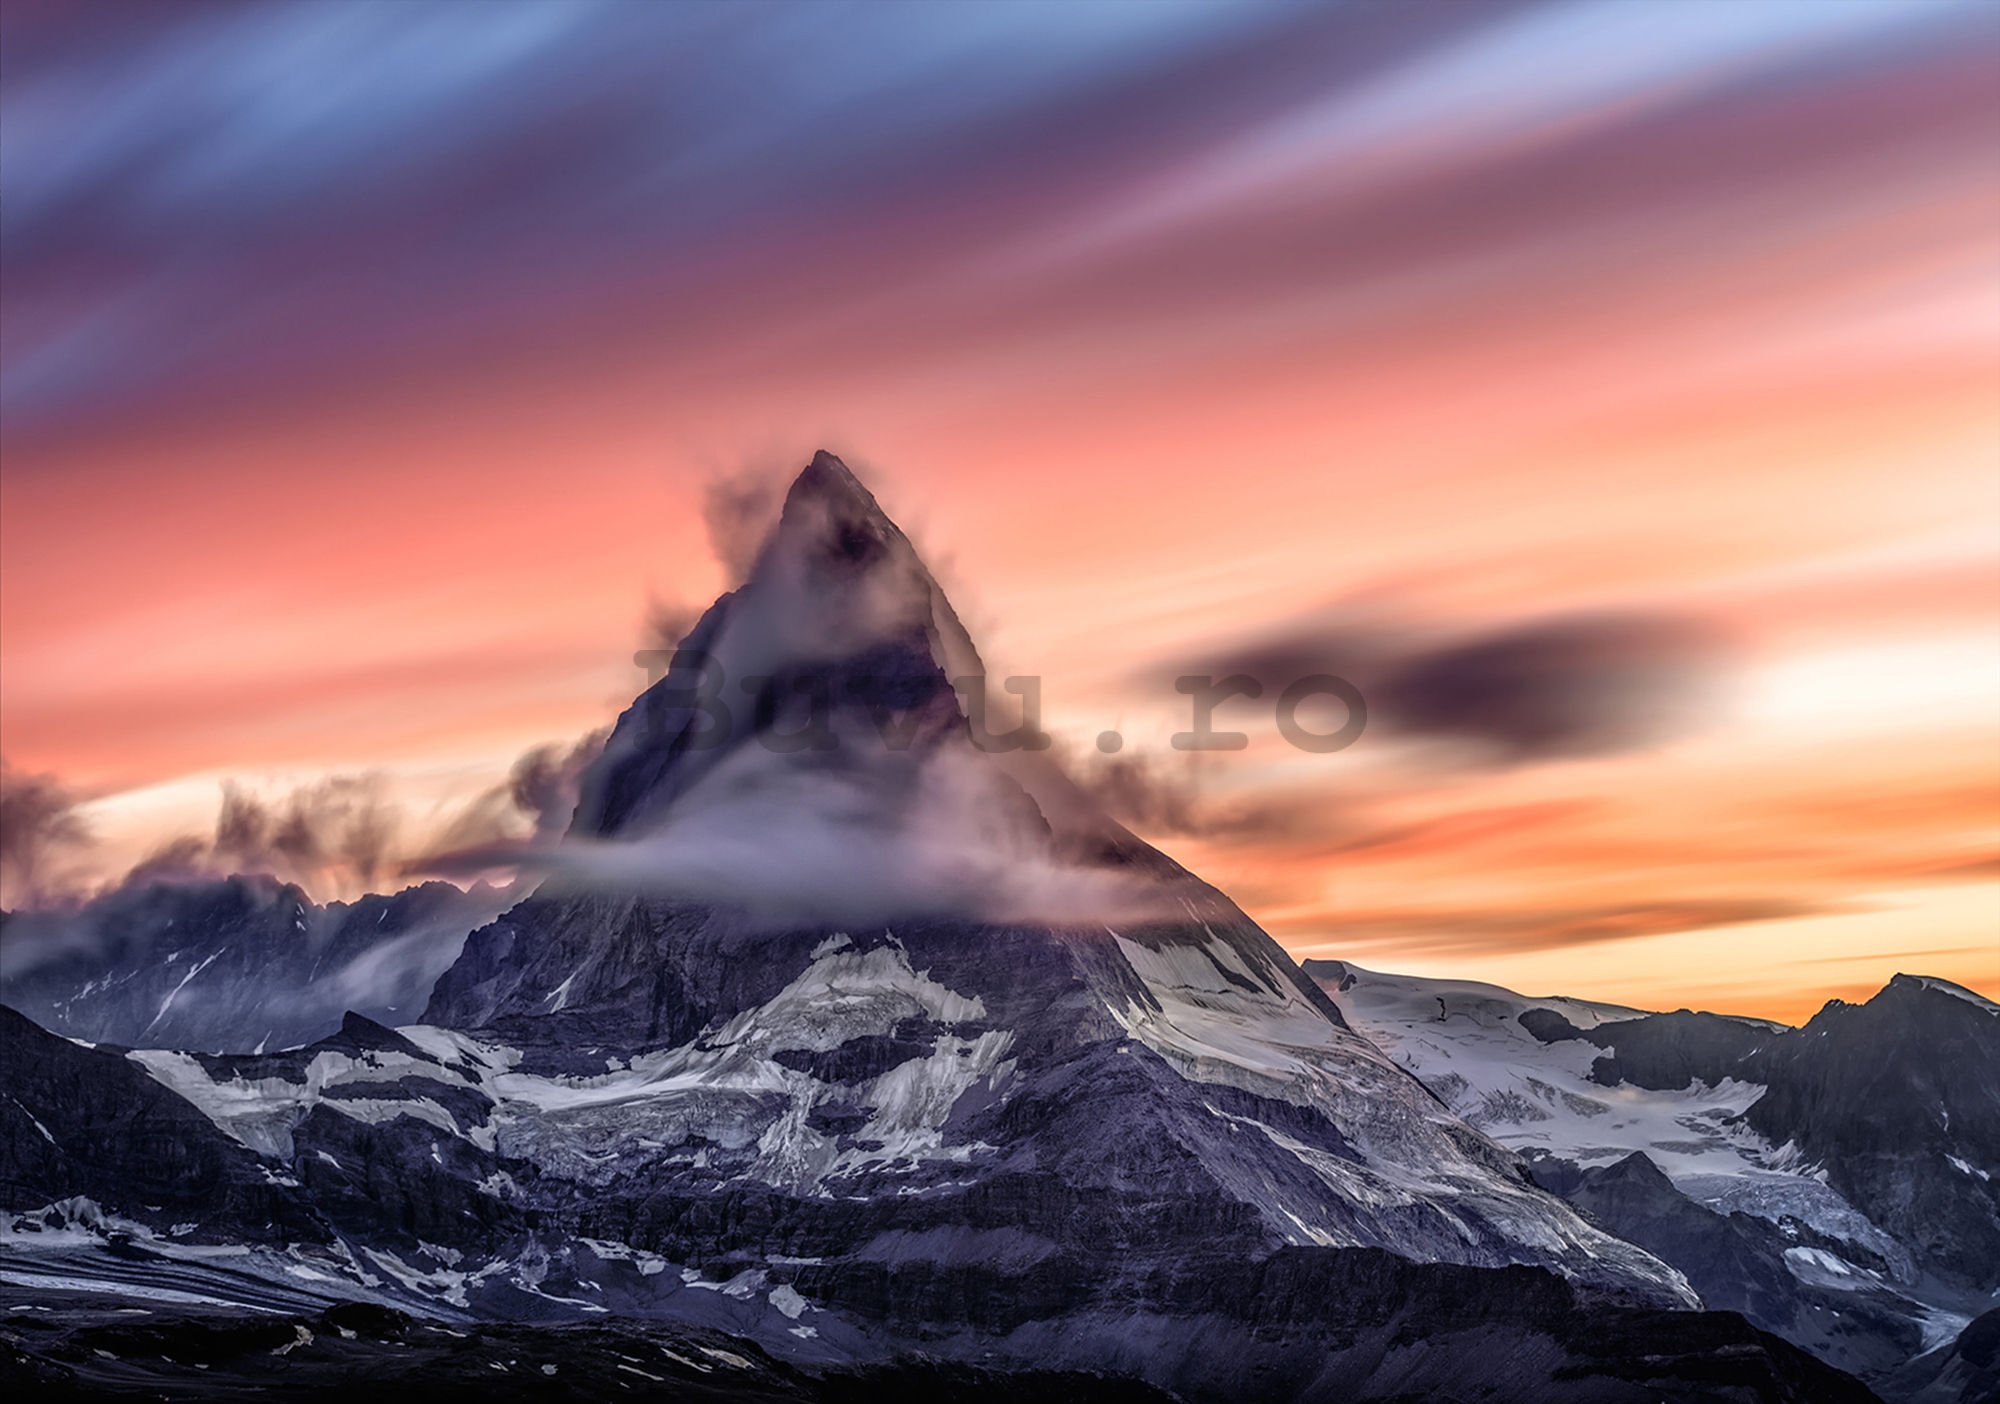 Fototapet vlies: Matterhorn (1) - 104x152,5 cm